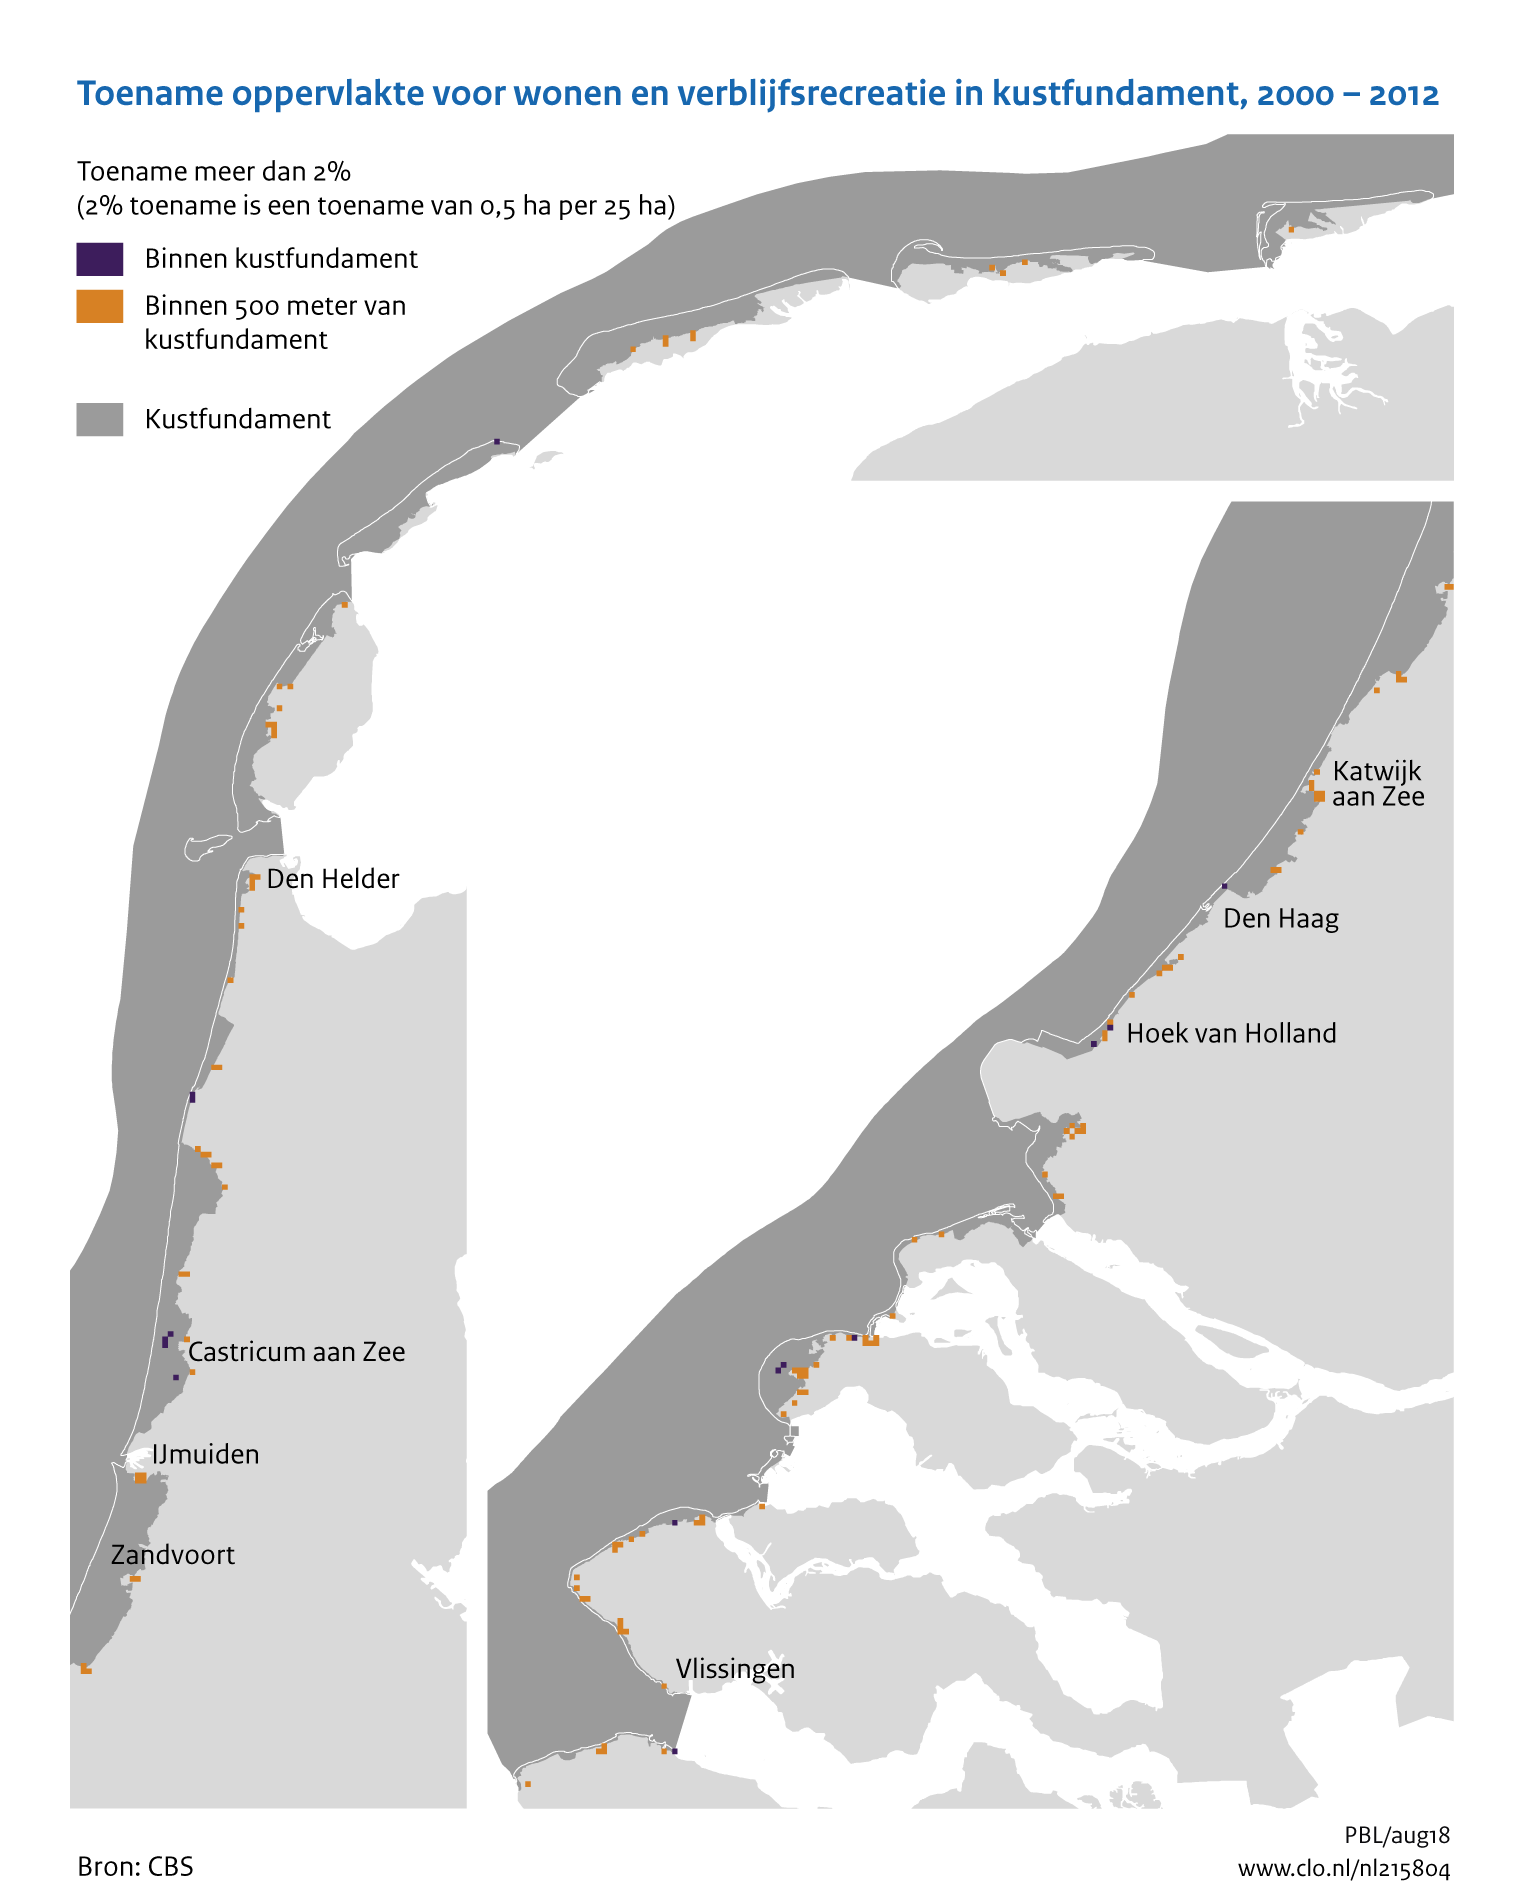 Figuur Toename bebouwd oppervlak in kustfundament, 2000-2012. In de rest van de tekst wordt deze figuur uitgebreider uitgelegd.